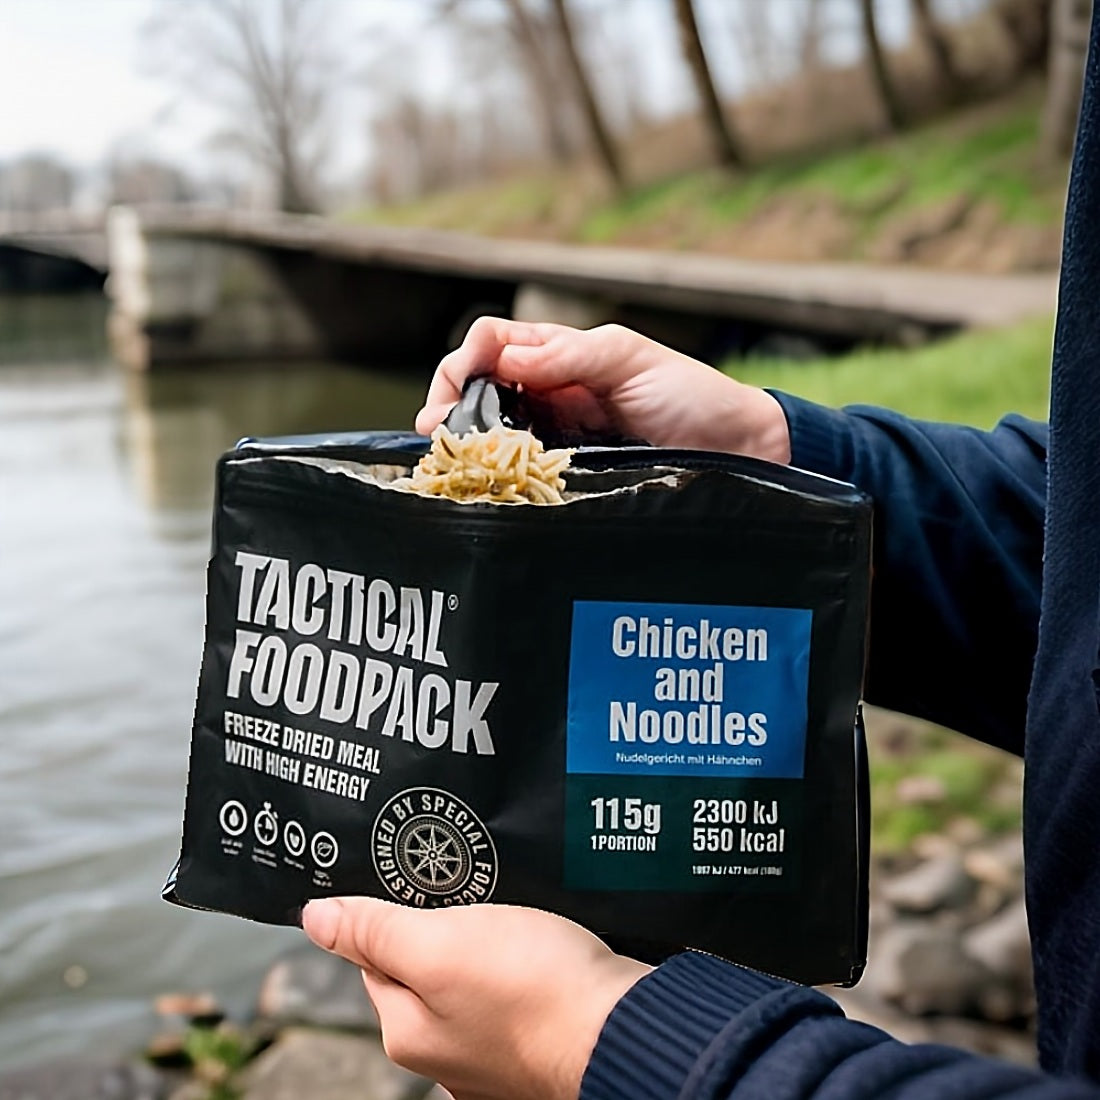 Tactical Foodpack Curry Chicken and Rice - Taktische Notfallnahrung für Spezialkräfte in Krisensituationen